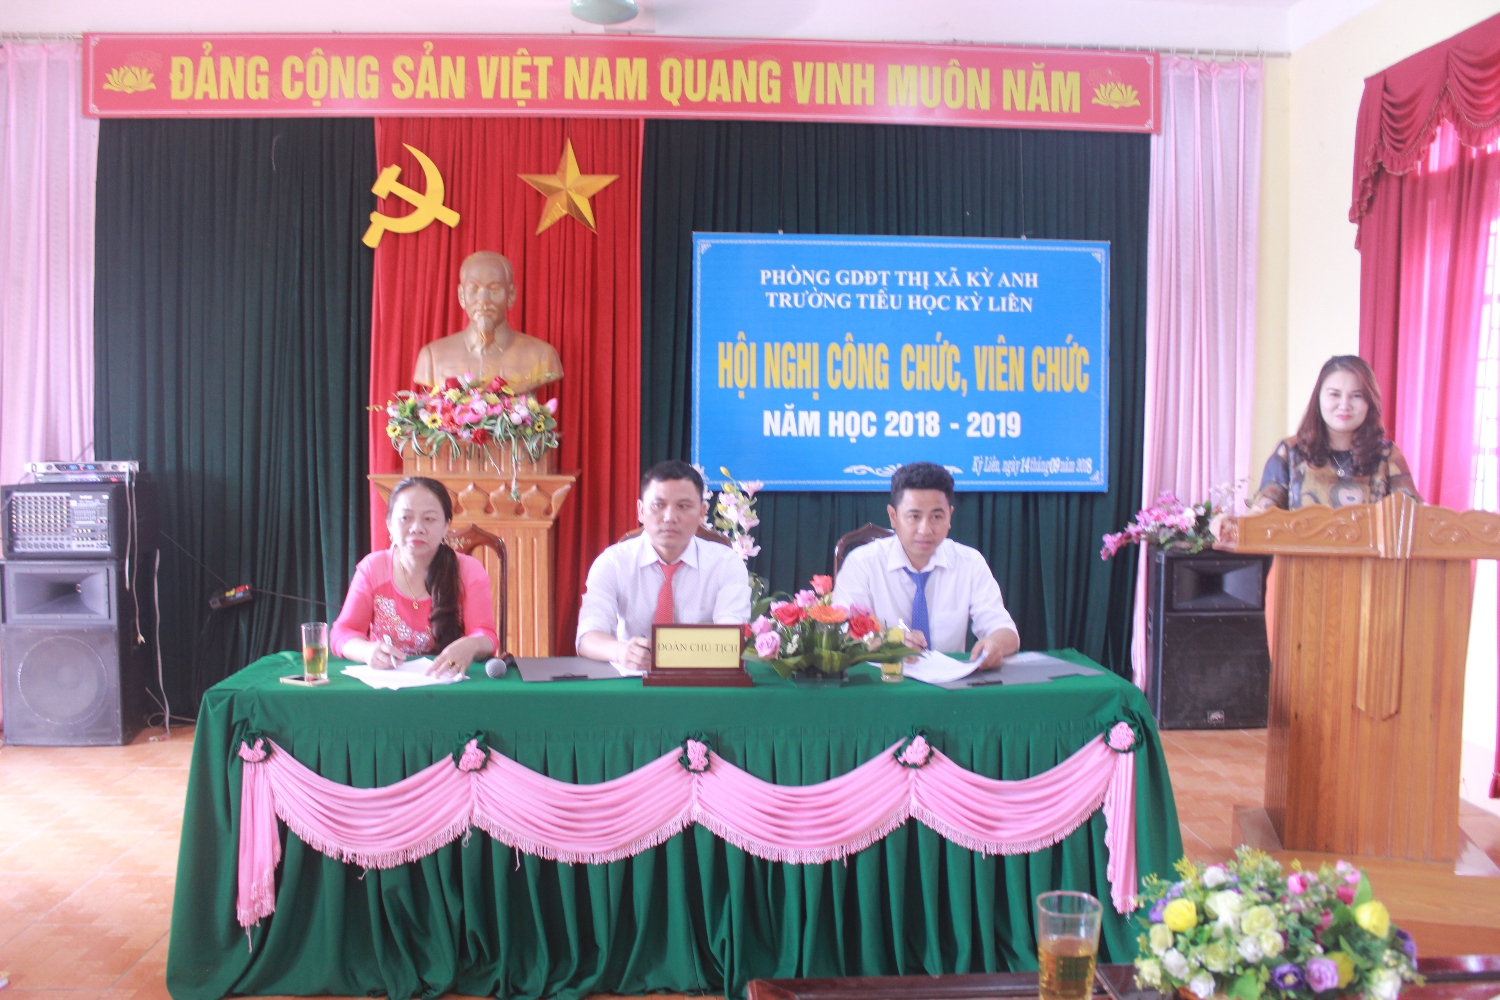 Cô giáo Nguyễn Thị Tường Vân phát biểu chỉ đạo hội nghi